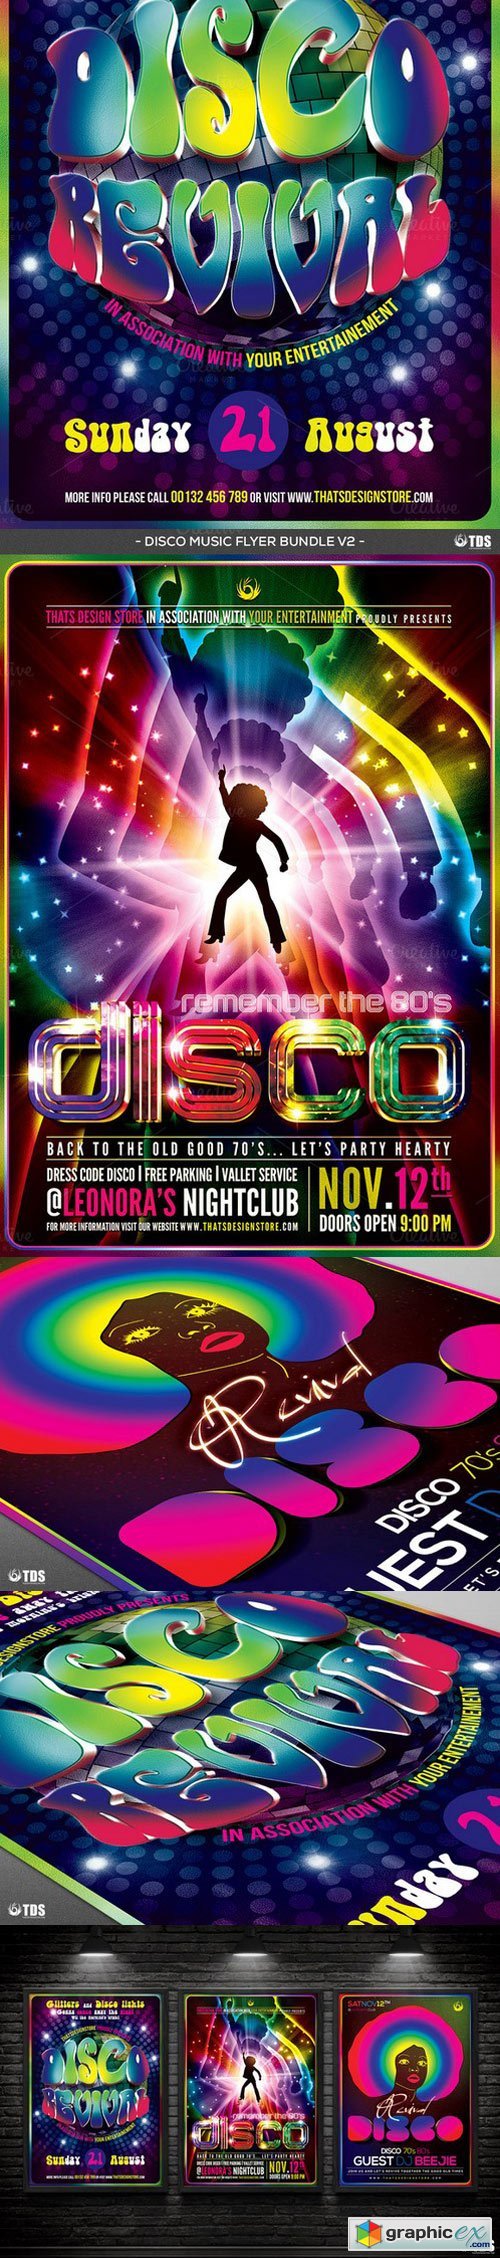 Disco Music Flyer Bundle V2